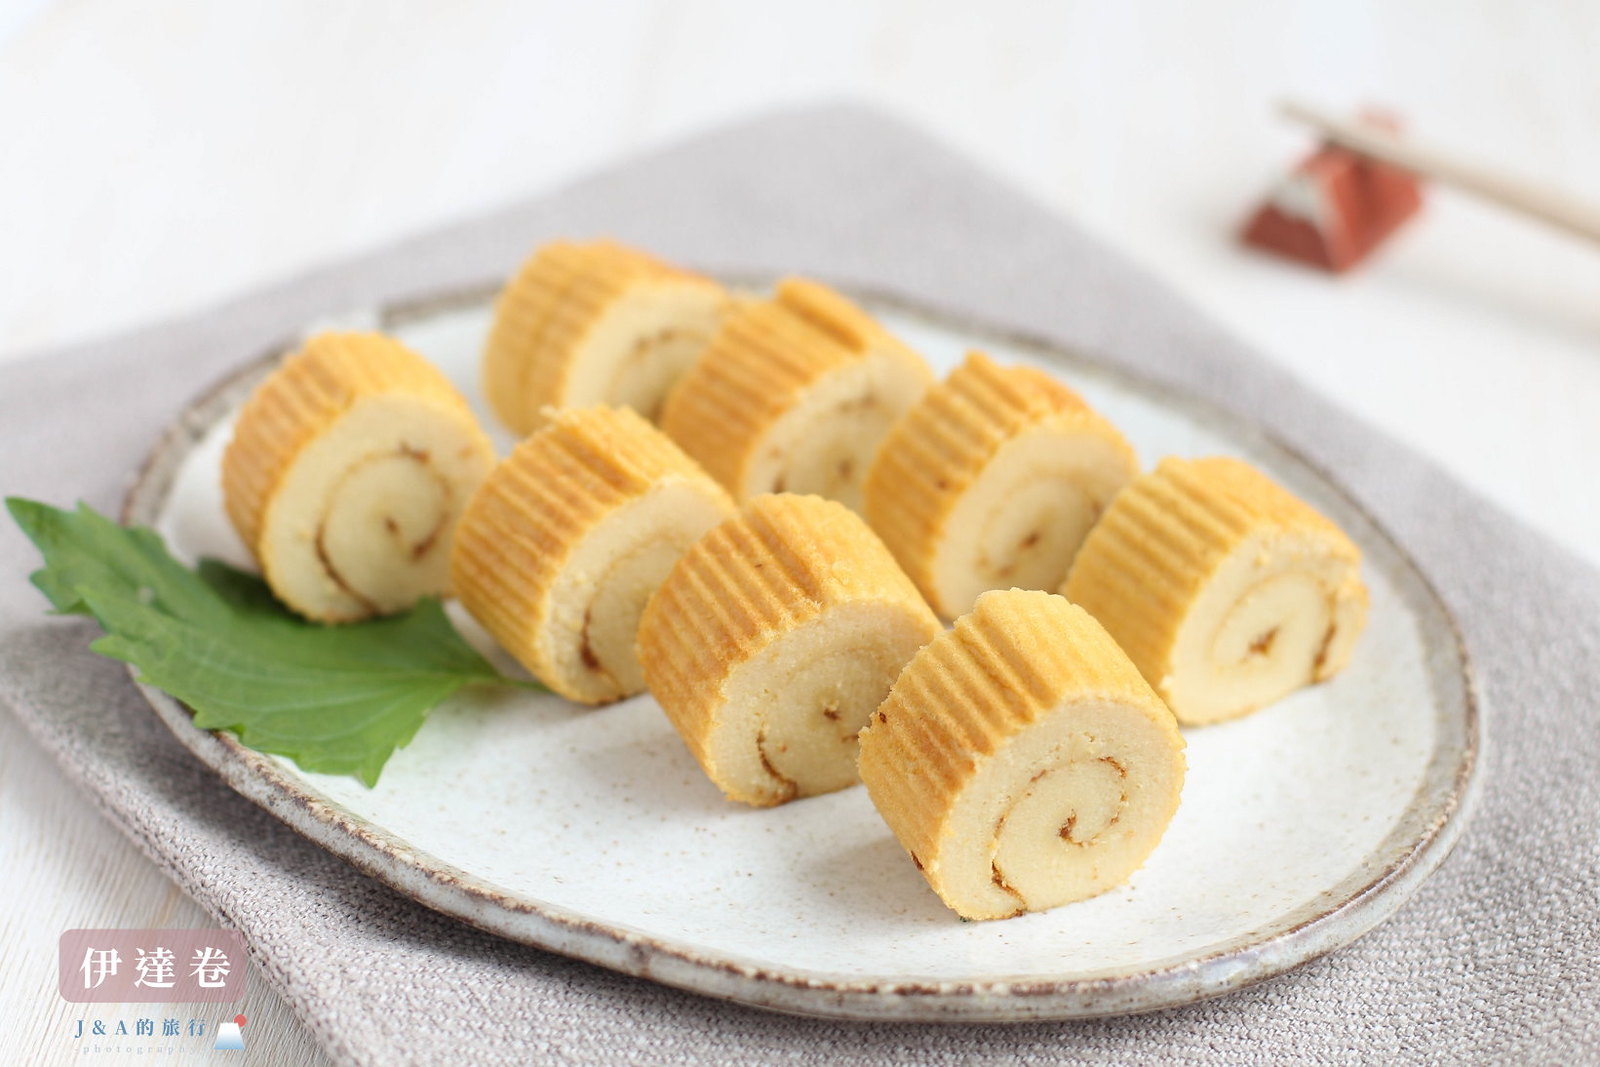 【食譜】菠蘿吐司-酥脆香甜的菠蘿抹醬做法 @J&amp;A的旅行